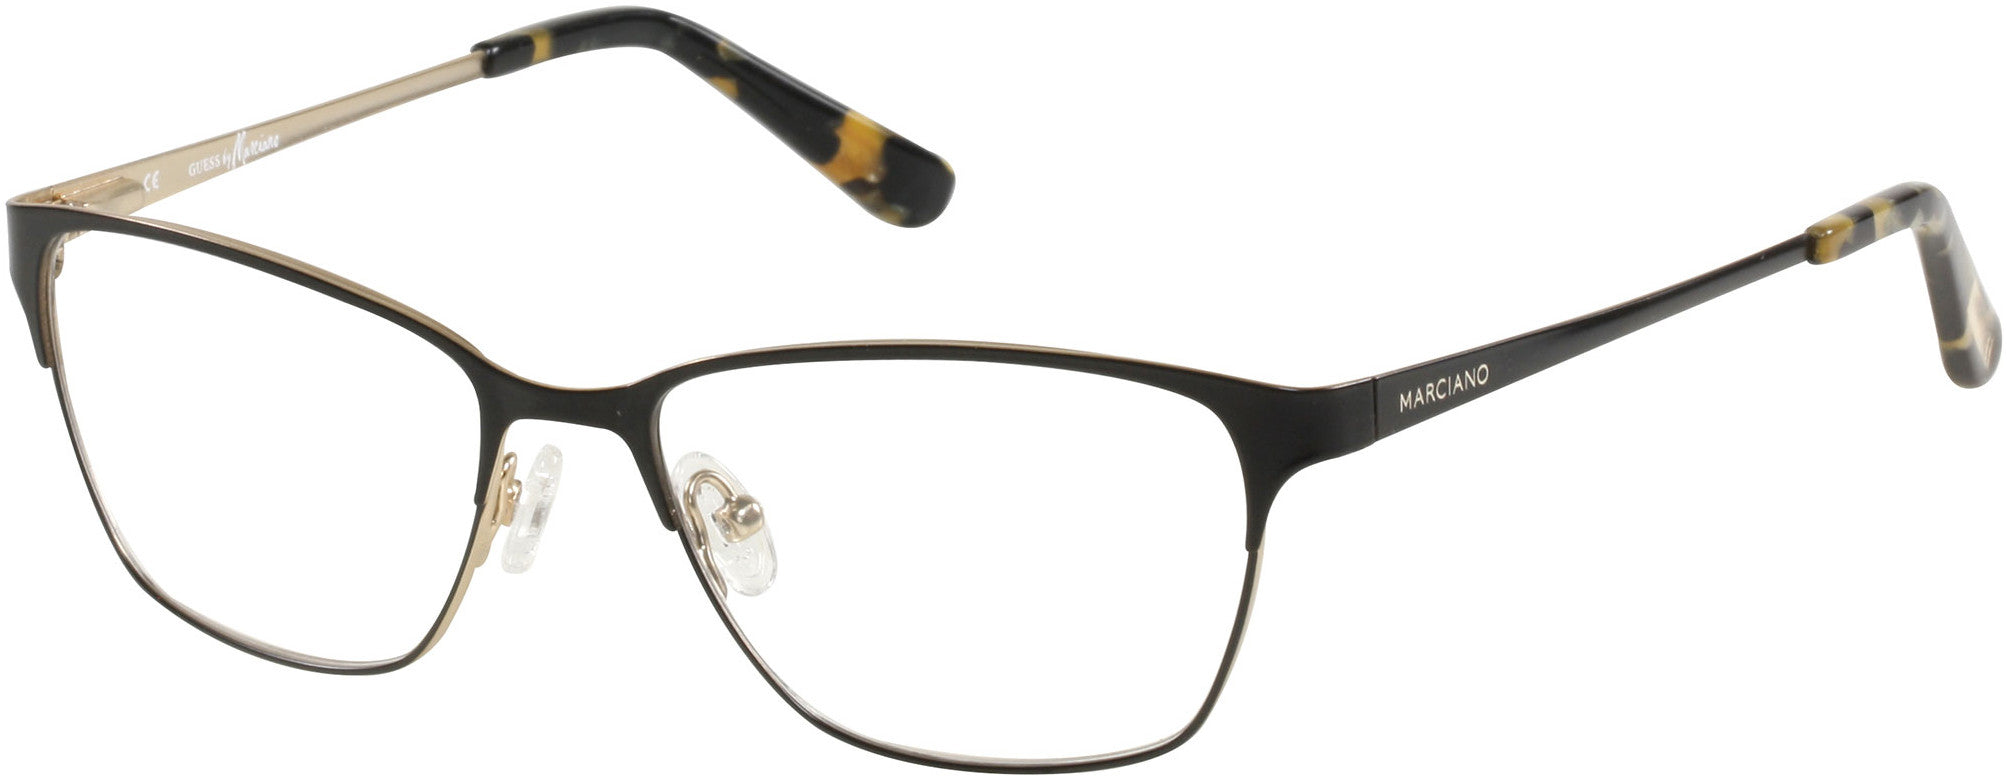 Guess By Marciano GM0238 Eyeglasses B84-B84 - Black